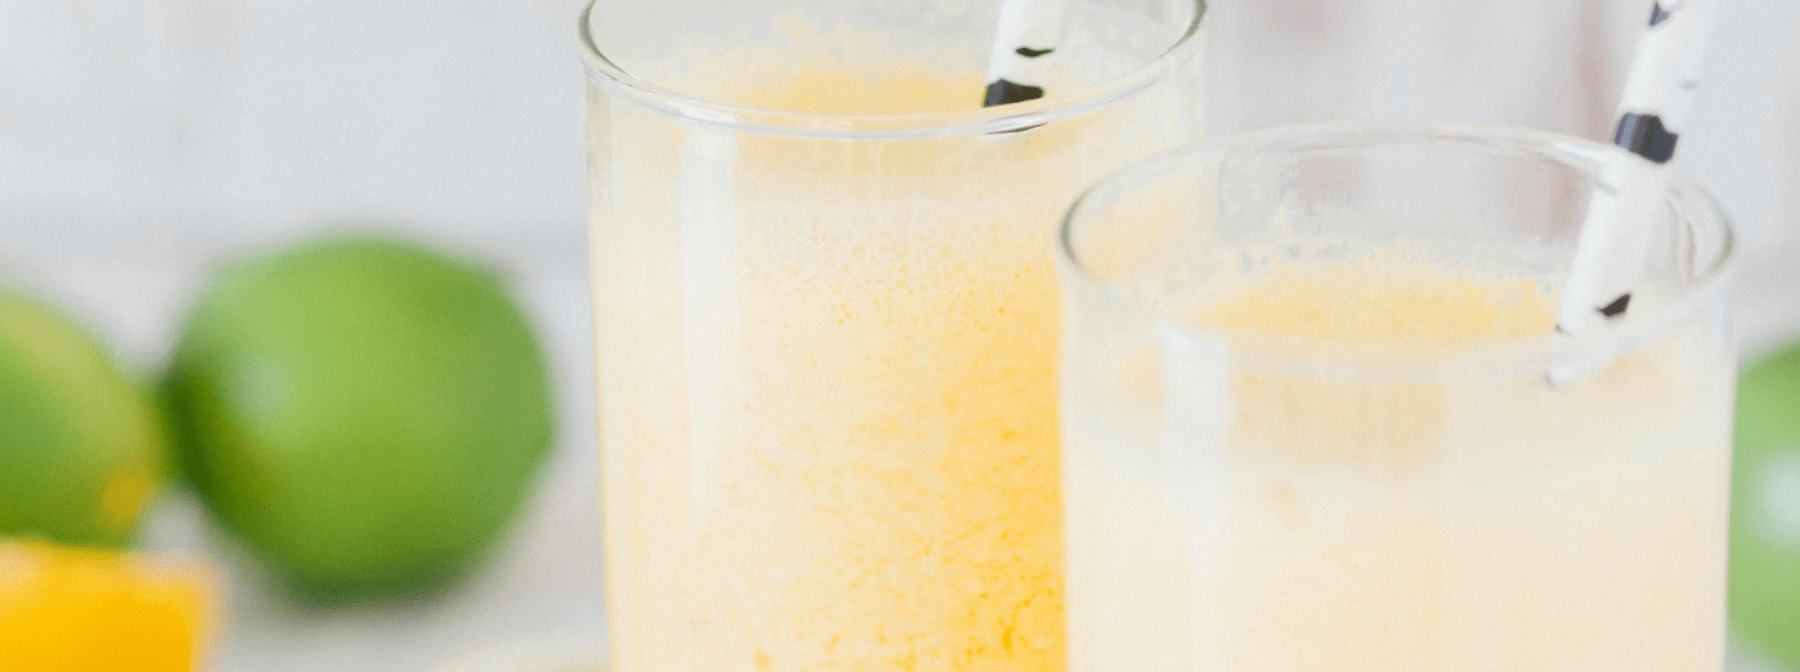 Le jus de citron pour maigrir : mythe ou réalité ?